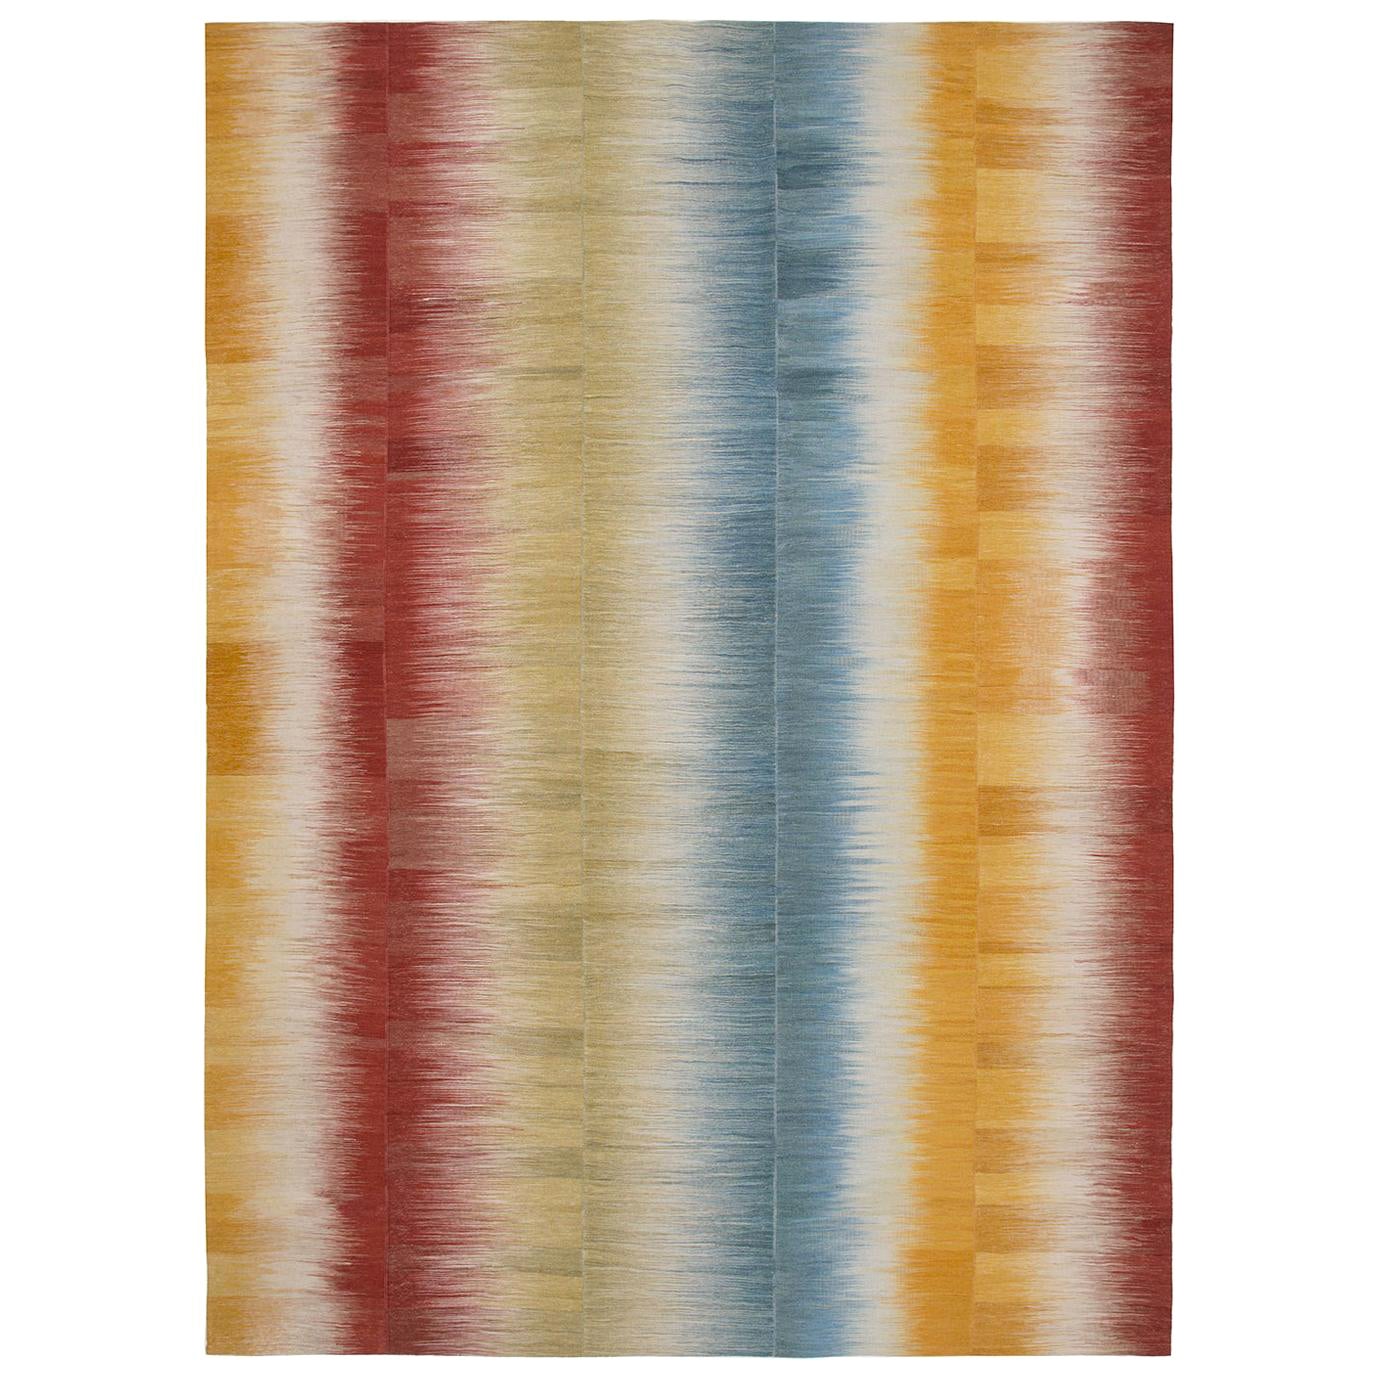 Persischer, handgewebter, flachgewebter Mazandaran-Teppich mit roten, gelben und blauen Streifen